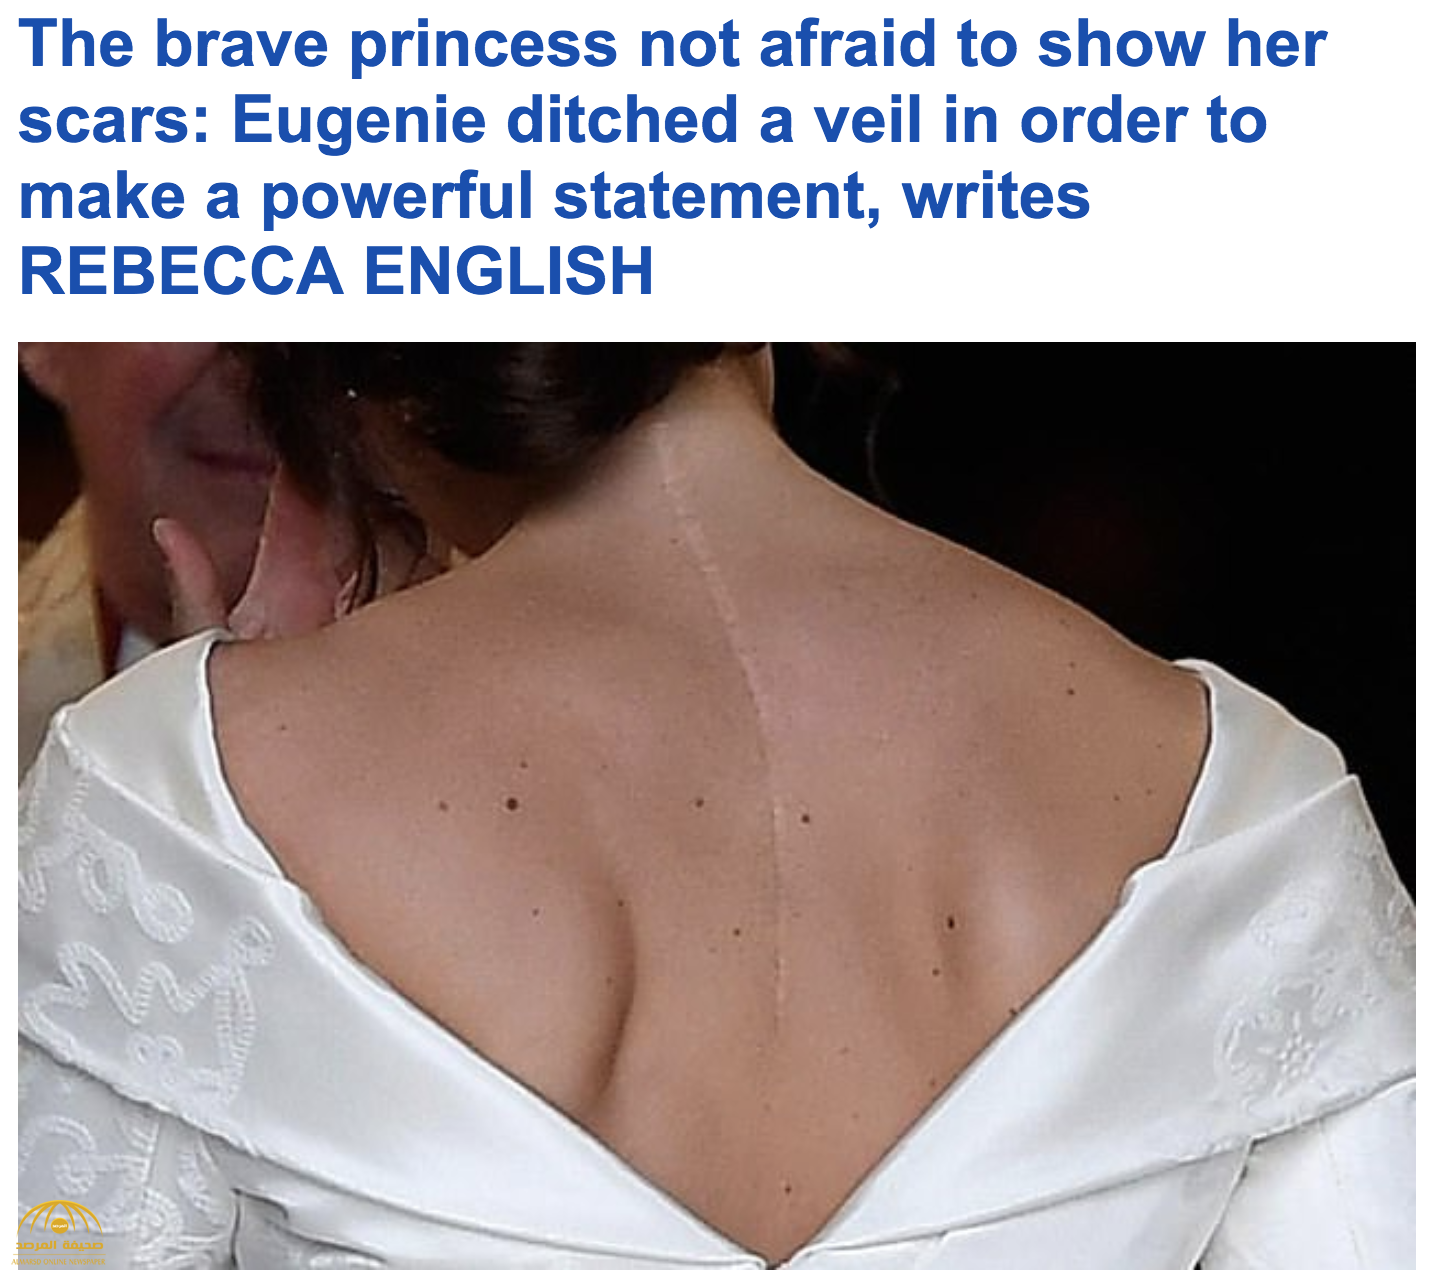 بالصور : السر وراء إصابة حفيدة ملكة بريطانيا بجرح "عميق" في الظهر الذي كشف عنه فستان زفافها!